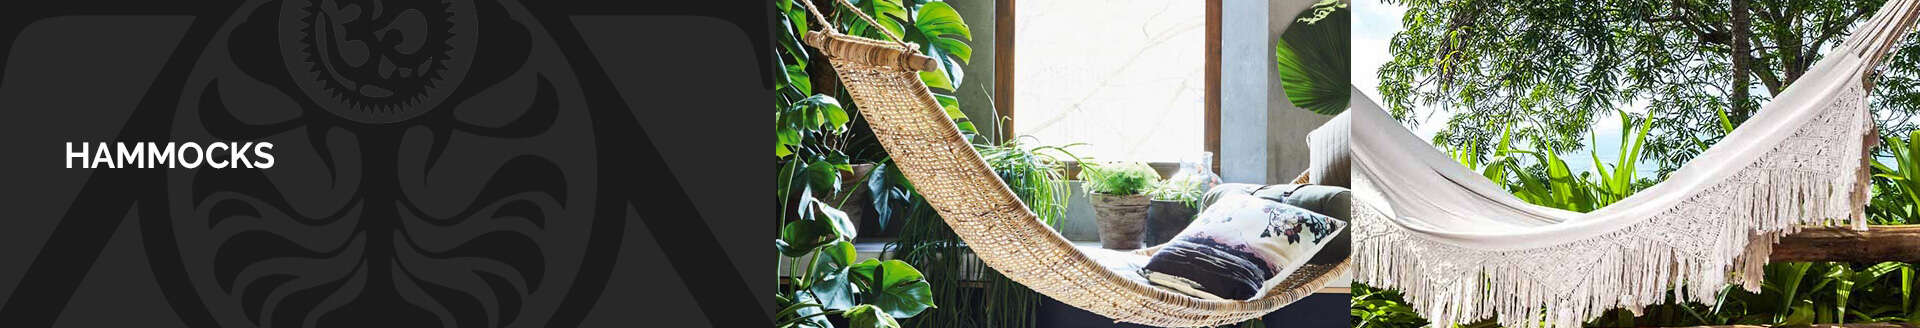 outdoor hammocks catalogue manufacturers indonesia exporters wholesalers suppliers bali java jepara zenddu